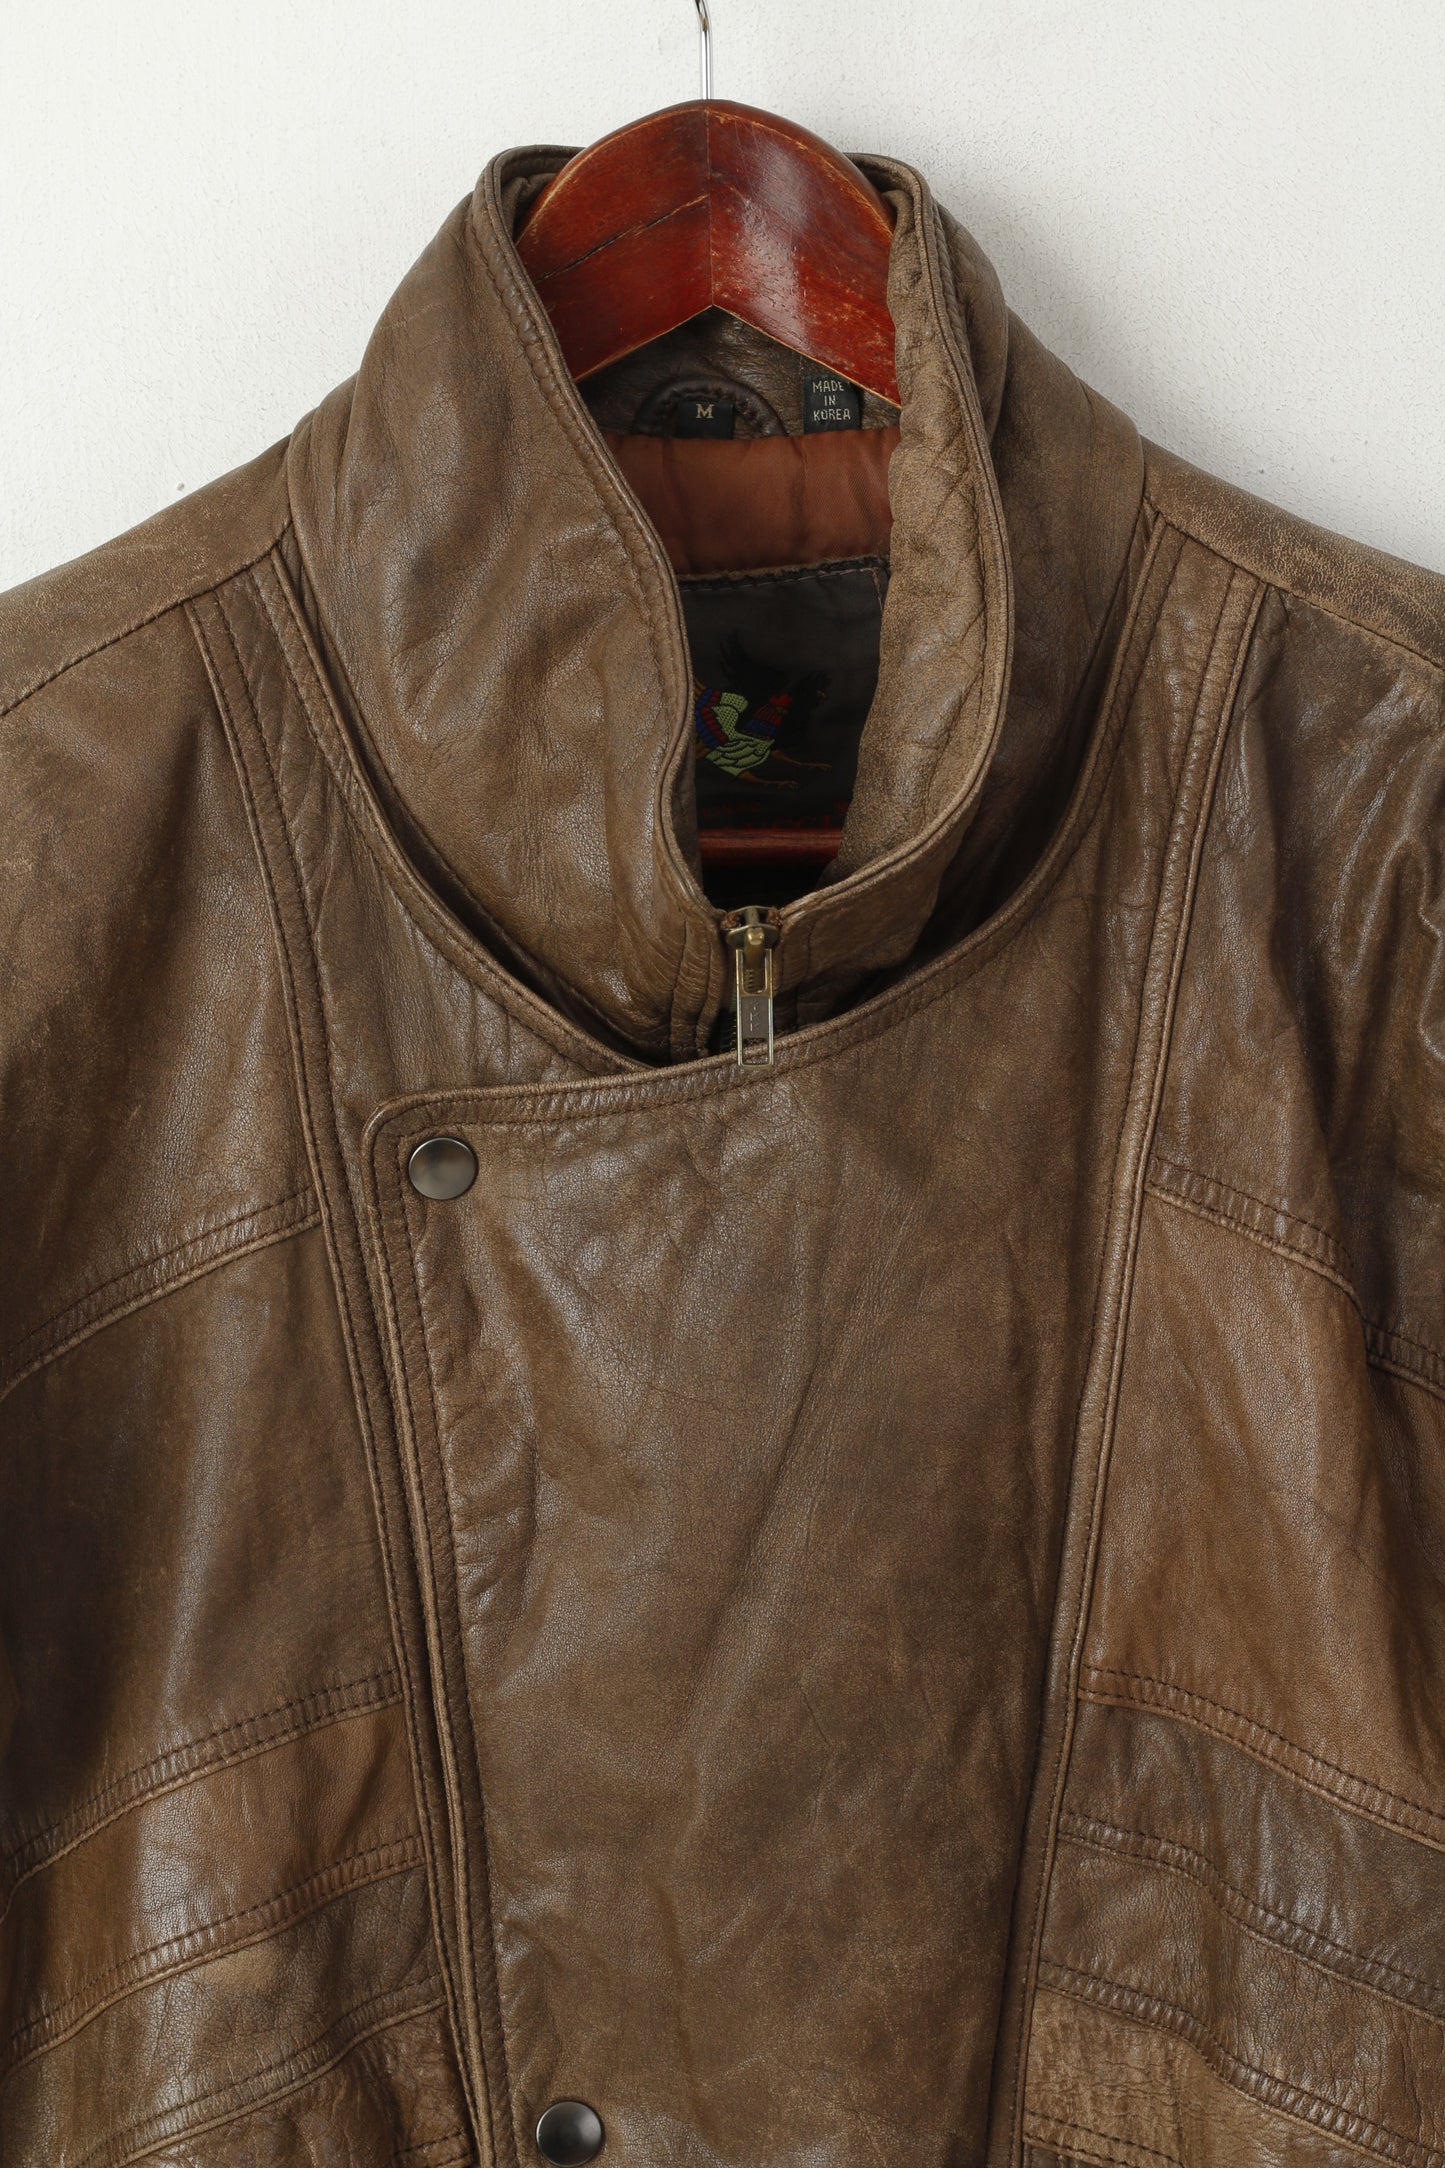 Dinno Gallucci Men M Leather Jacket Brown Pilot Vintage Biker Full Zip Shoulder Pads Top